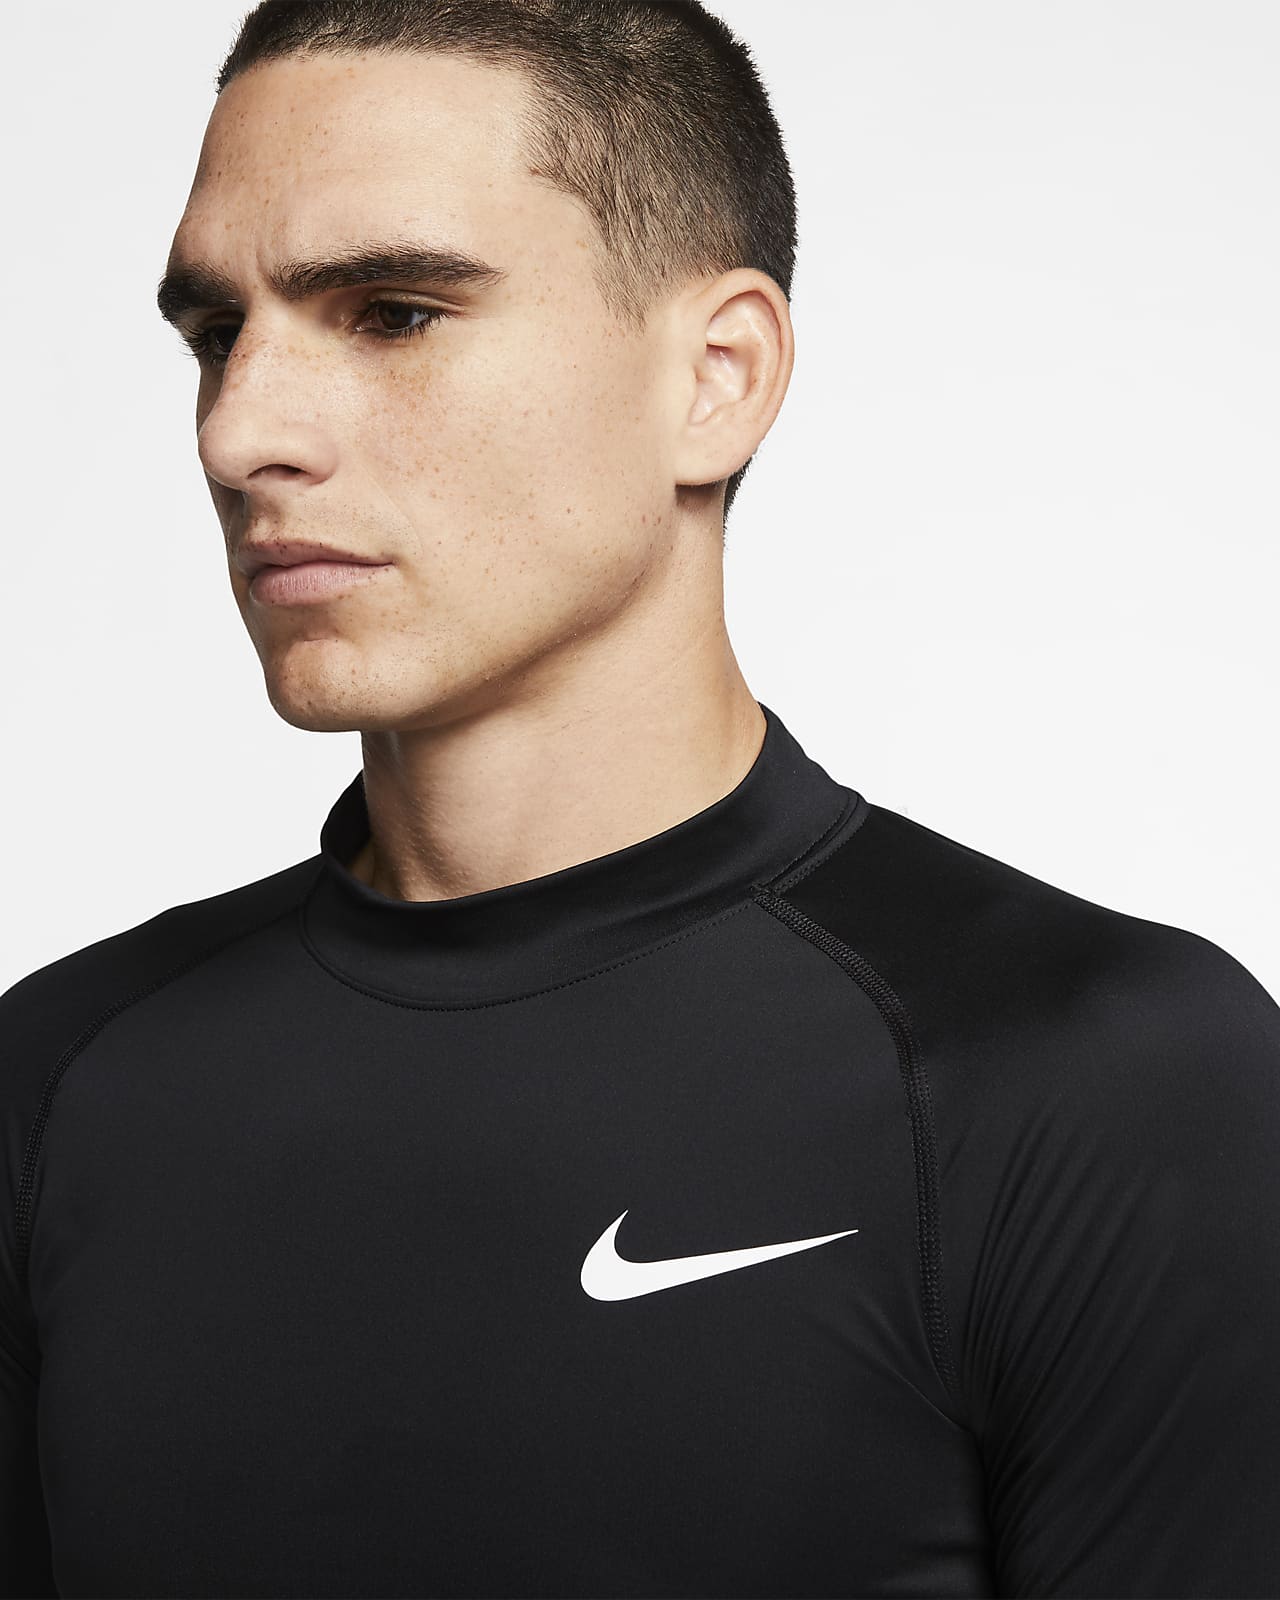 Nike公式 ナイキ プロ メンズ ロングスリーブ トップ オンラインストア 通販サイト